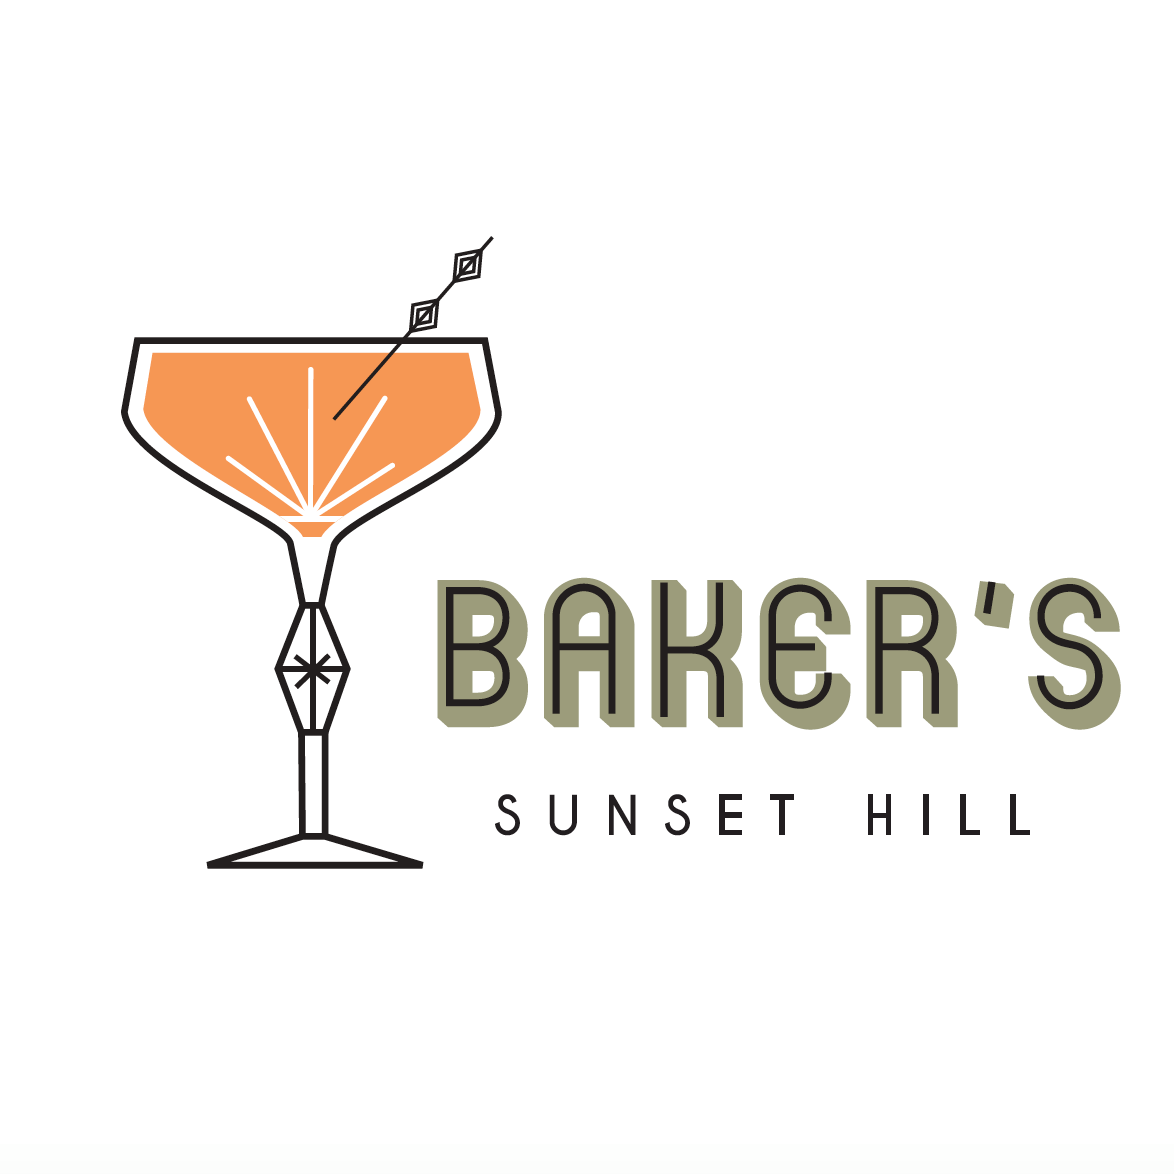 Business logo of Baker's